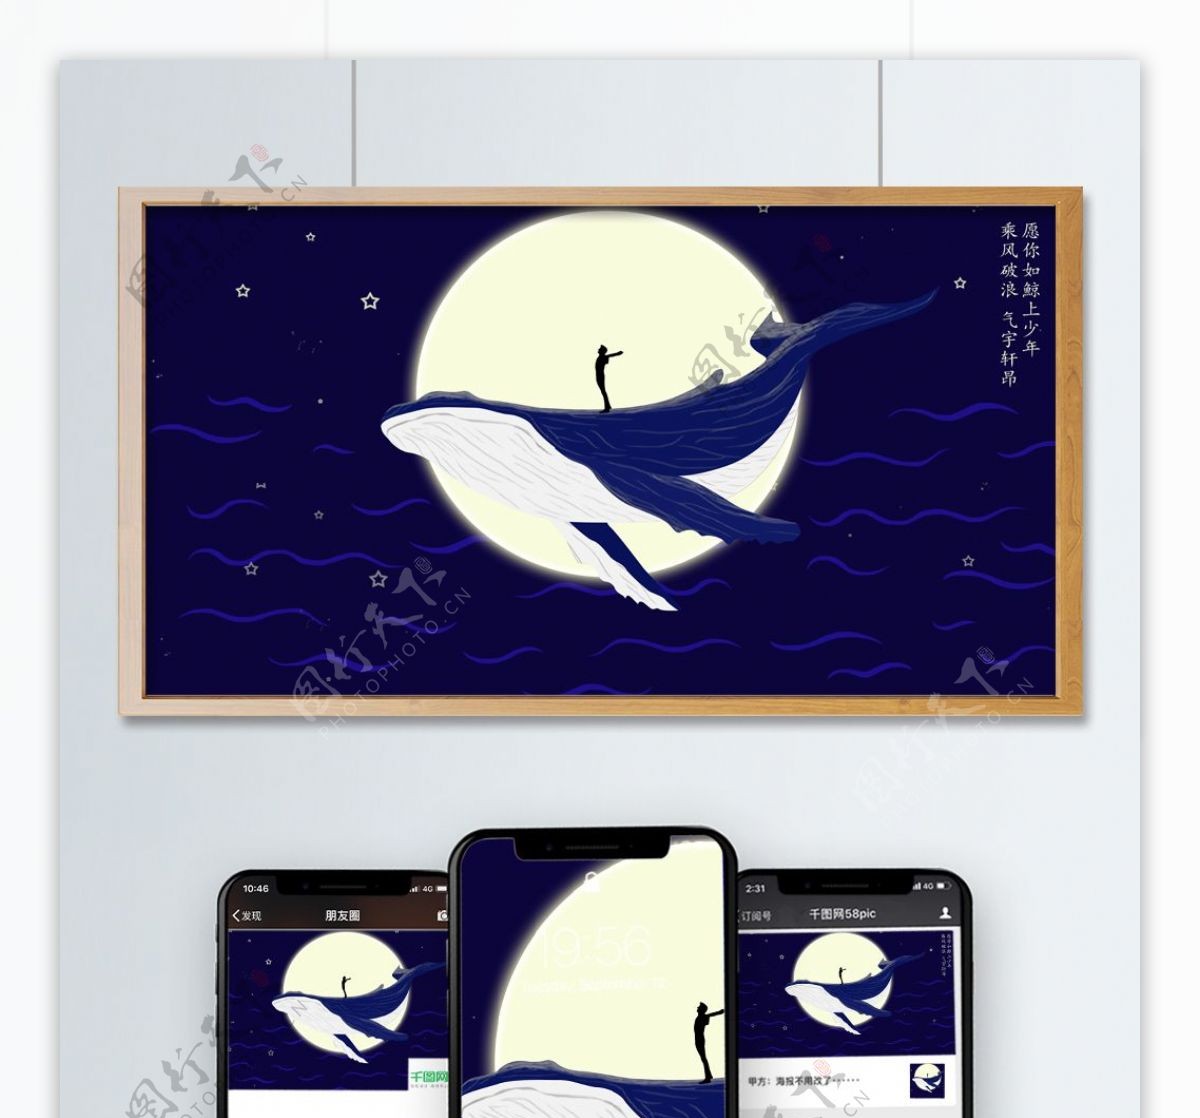 梦幻星空下站在鲸鱼上的少年插画海报